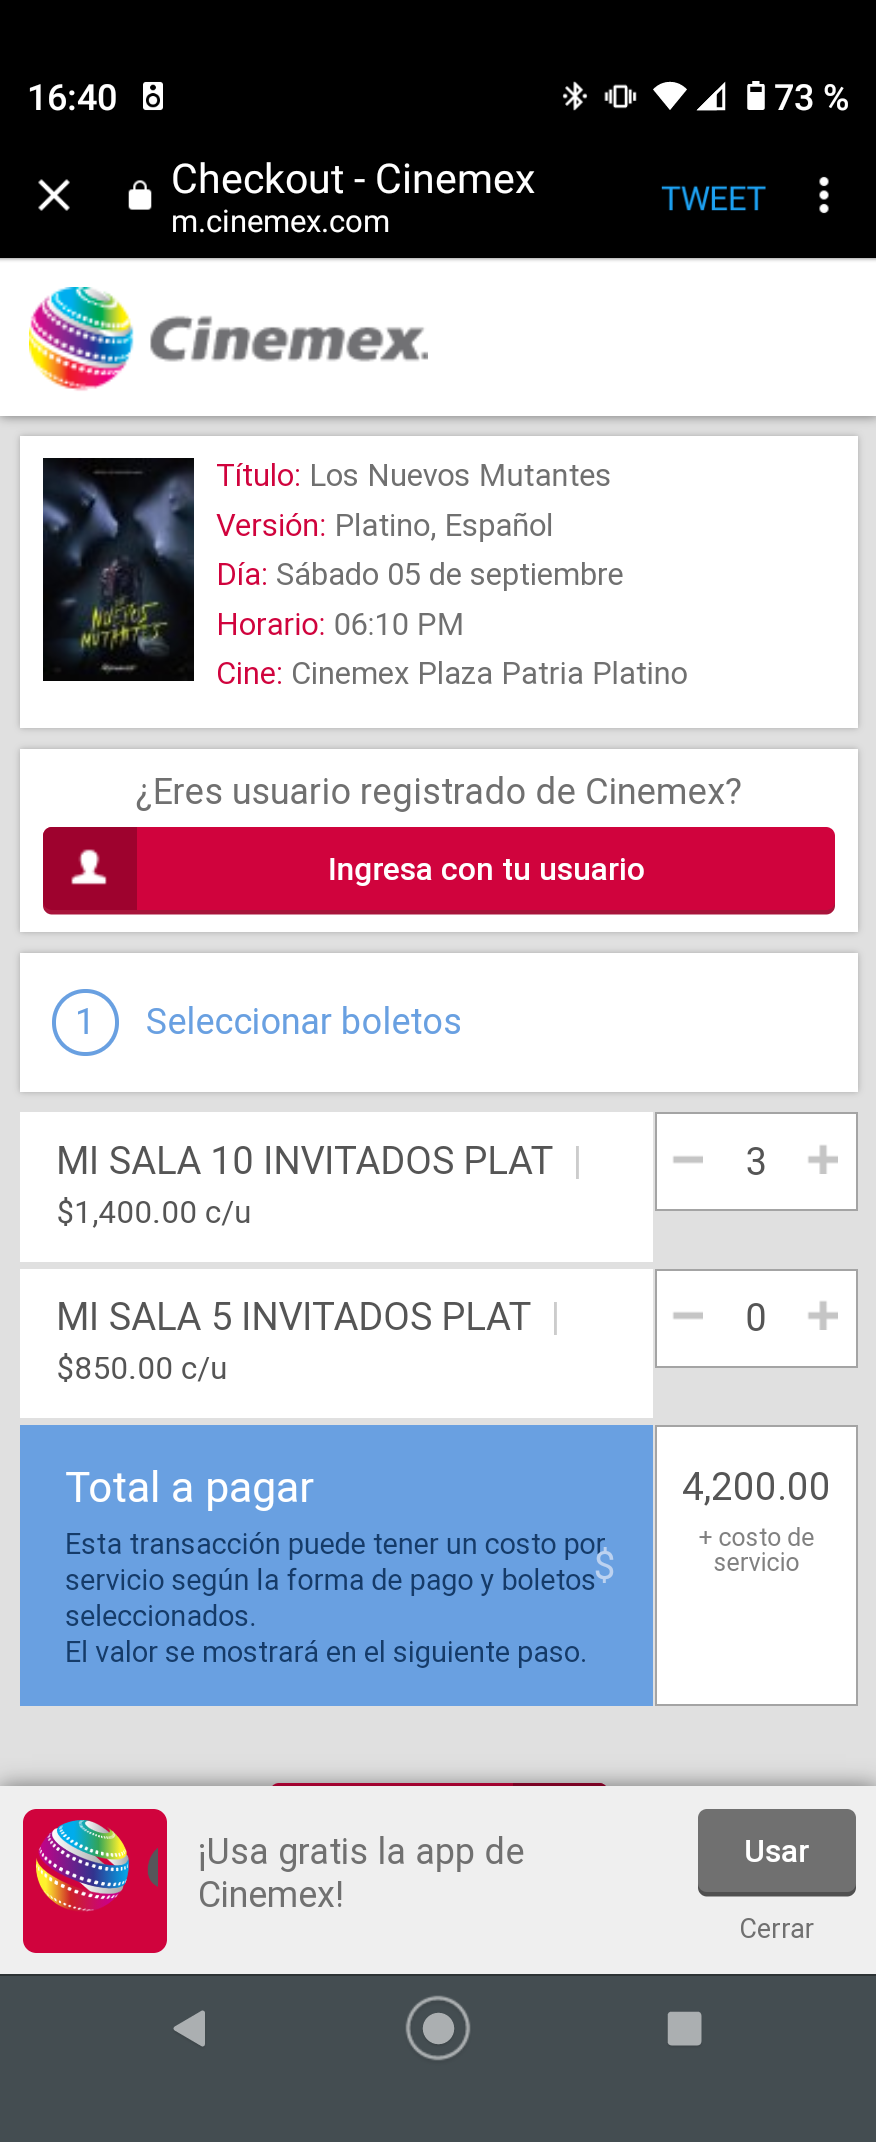 Saquen los billetes: Cinemex ya deja reservar salas completas de cine pa' mantener la sana distancia